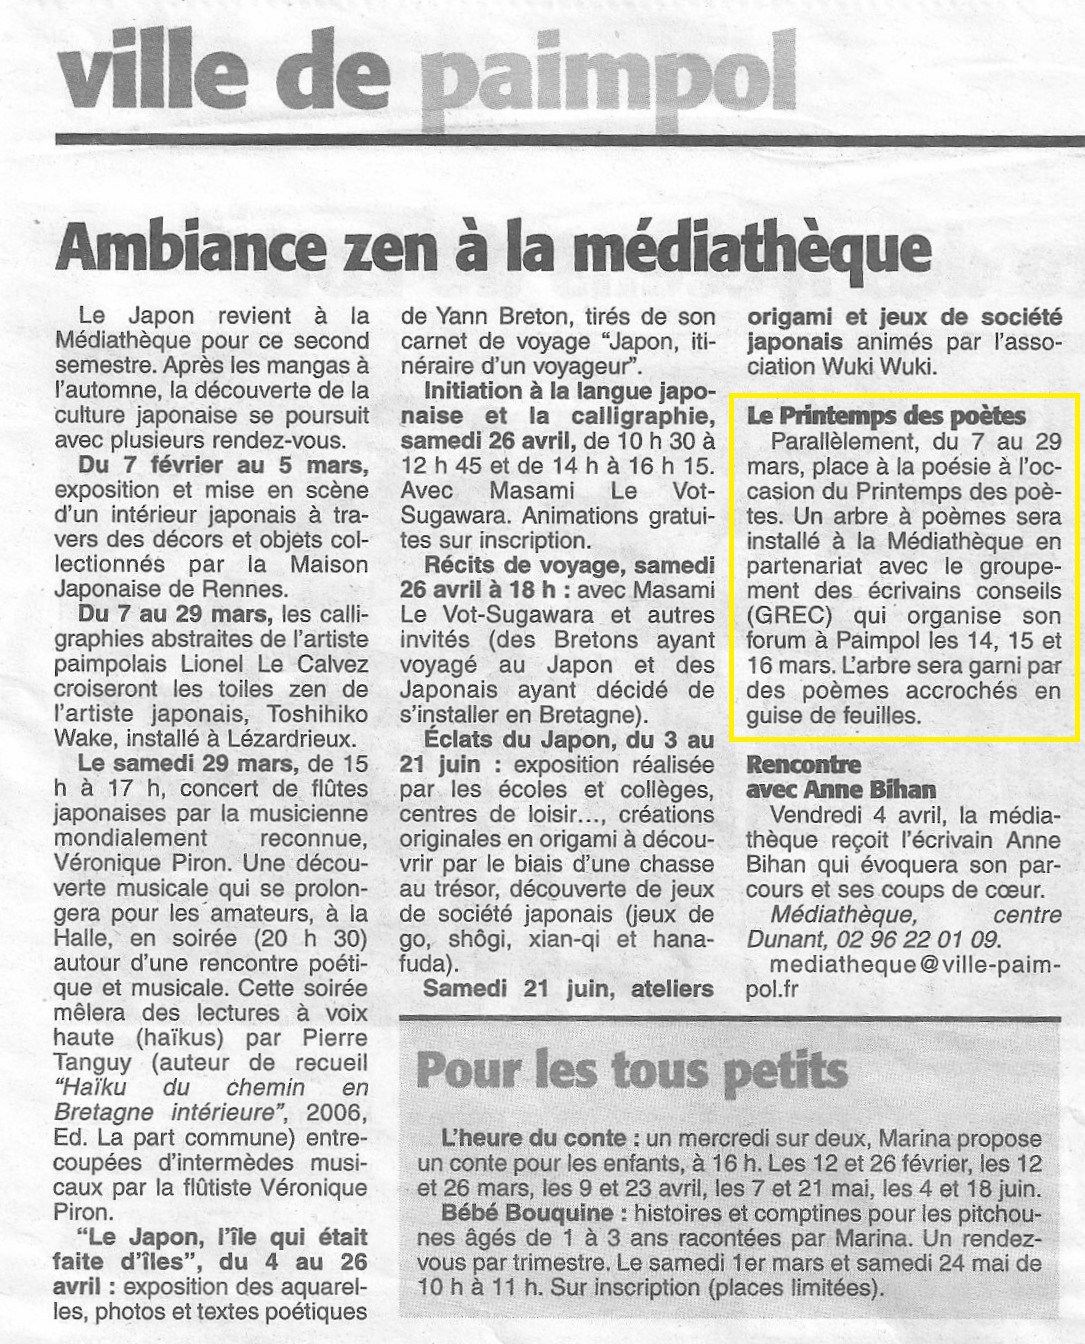 La Presse d'Armor, Ambiance zen à la médiathèque (5 février 2014)